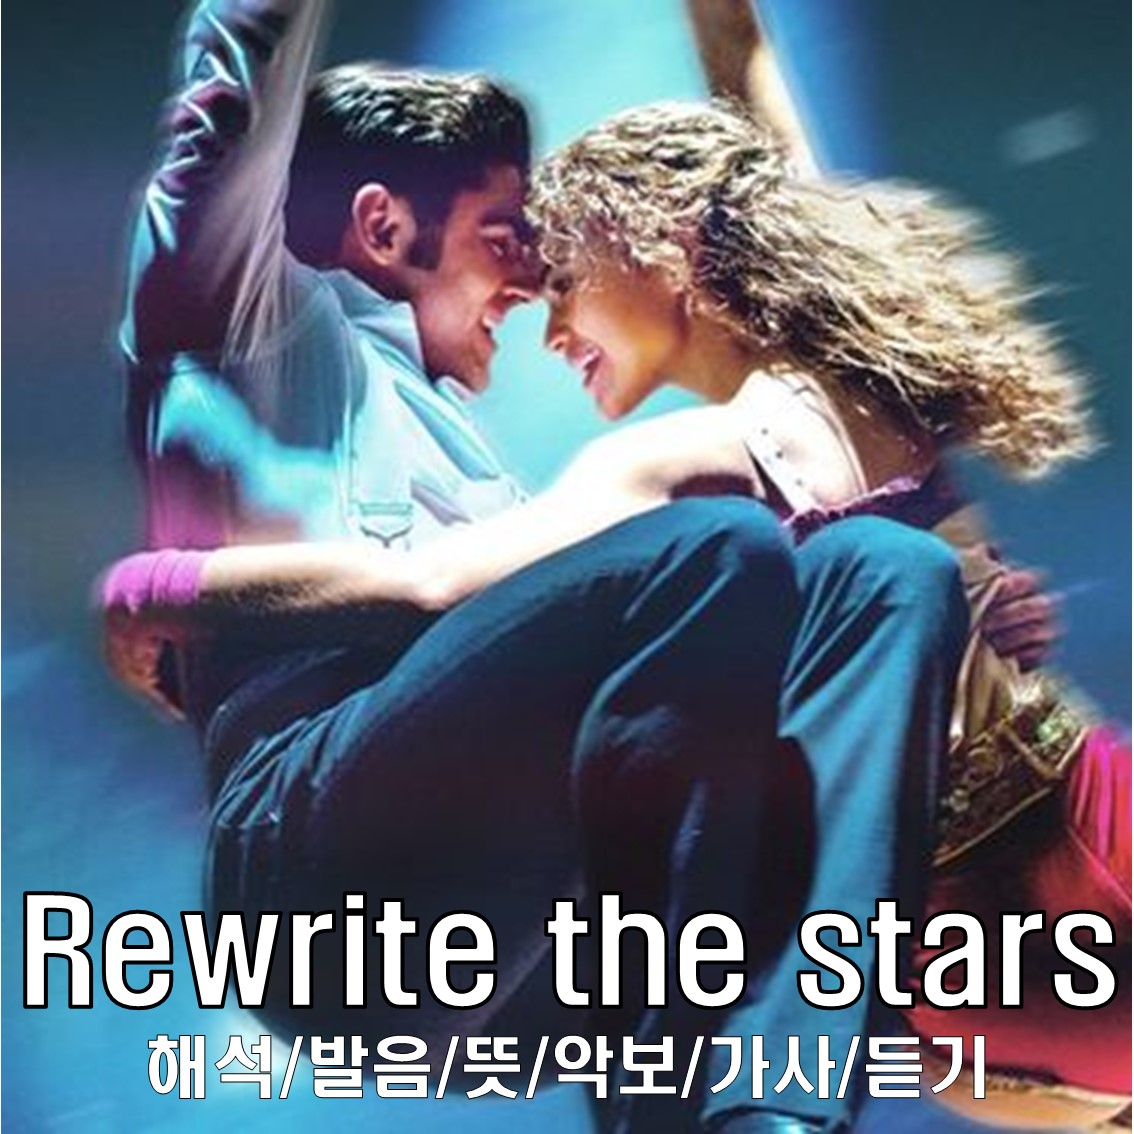 Rewrite the stars 해석/발음/뜻/악보/가사/듣기 - Zac Efron